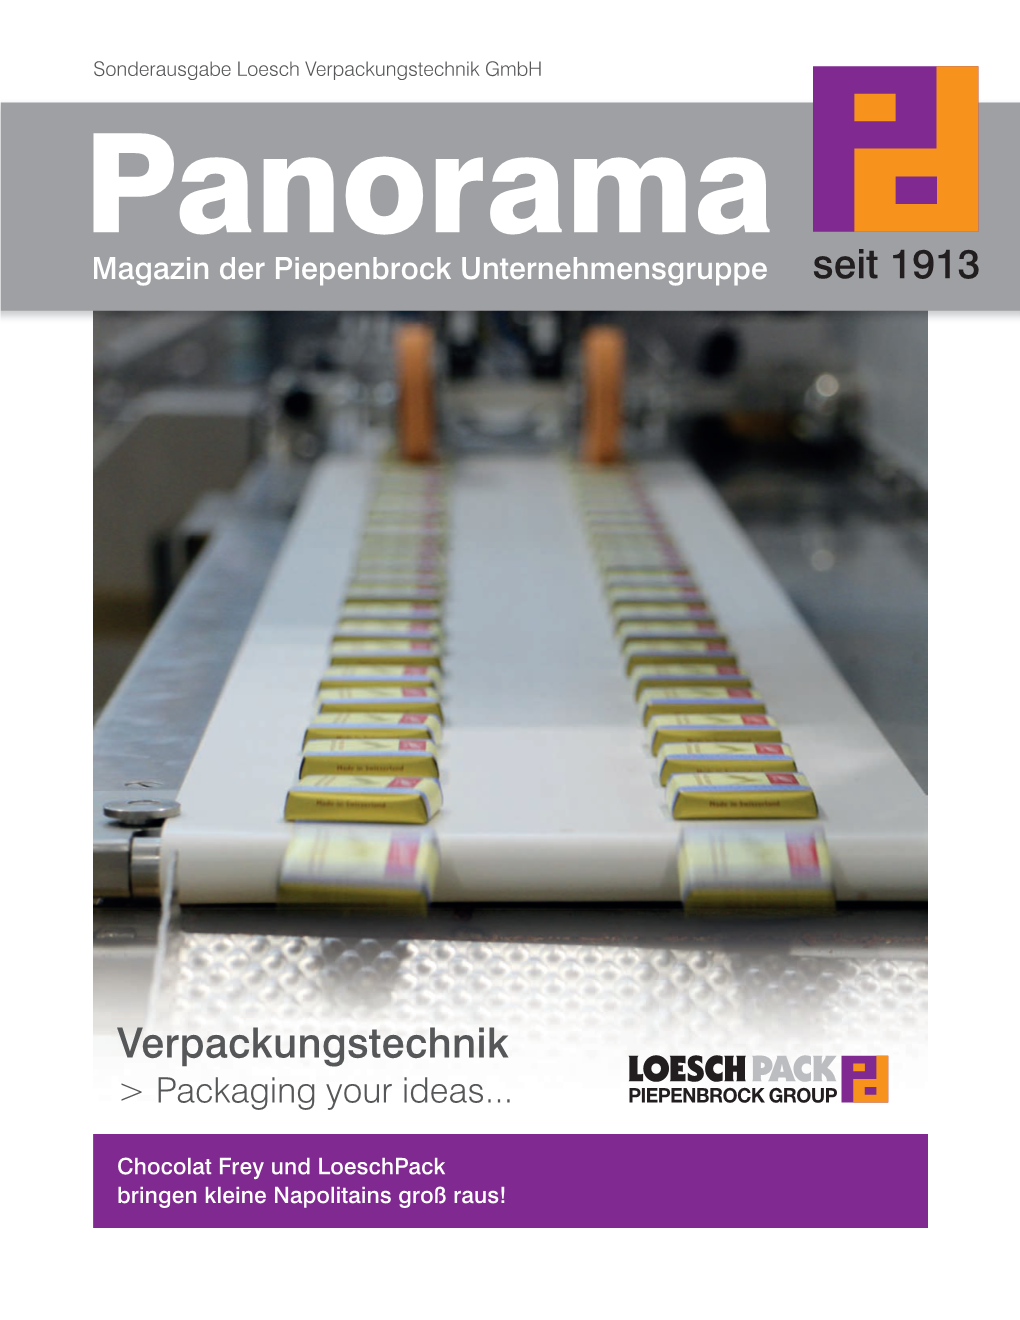 Verpackungstechnik Gmbh Panorama Magazin Der Piepenbrock Unternehmensgruppe